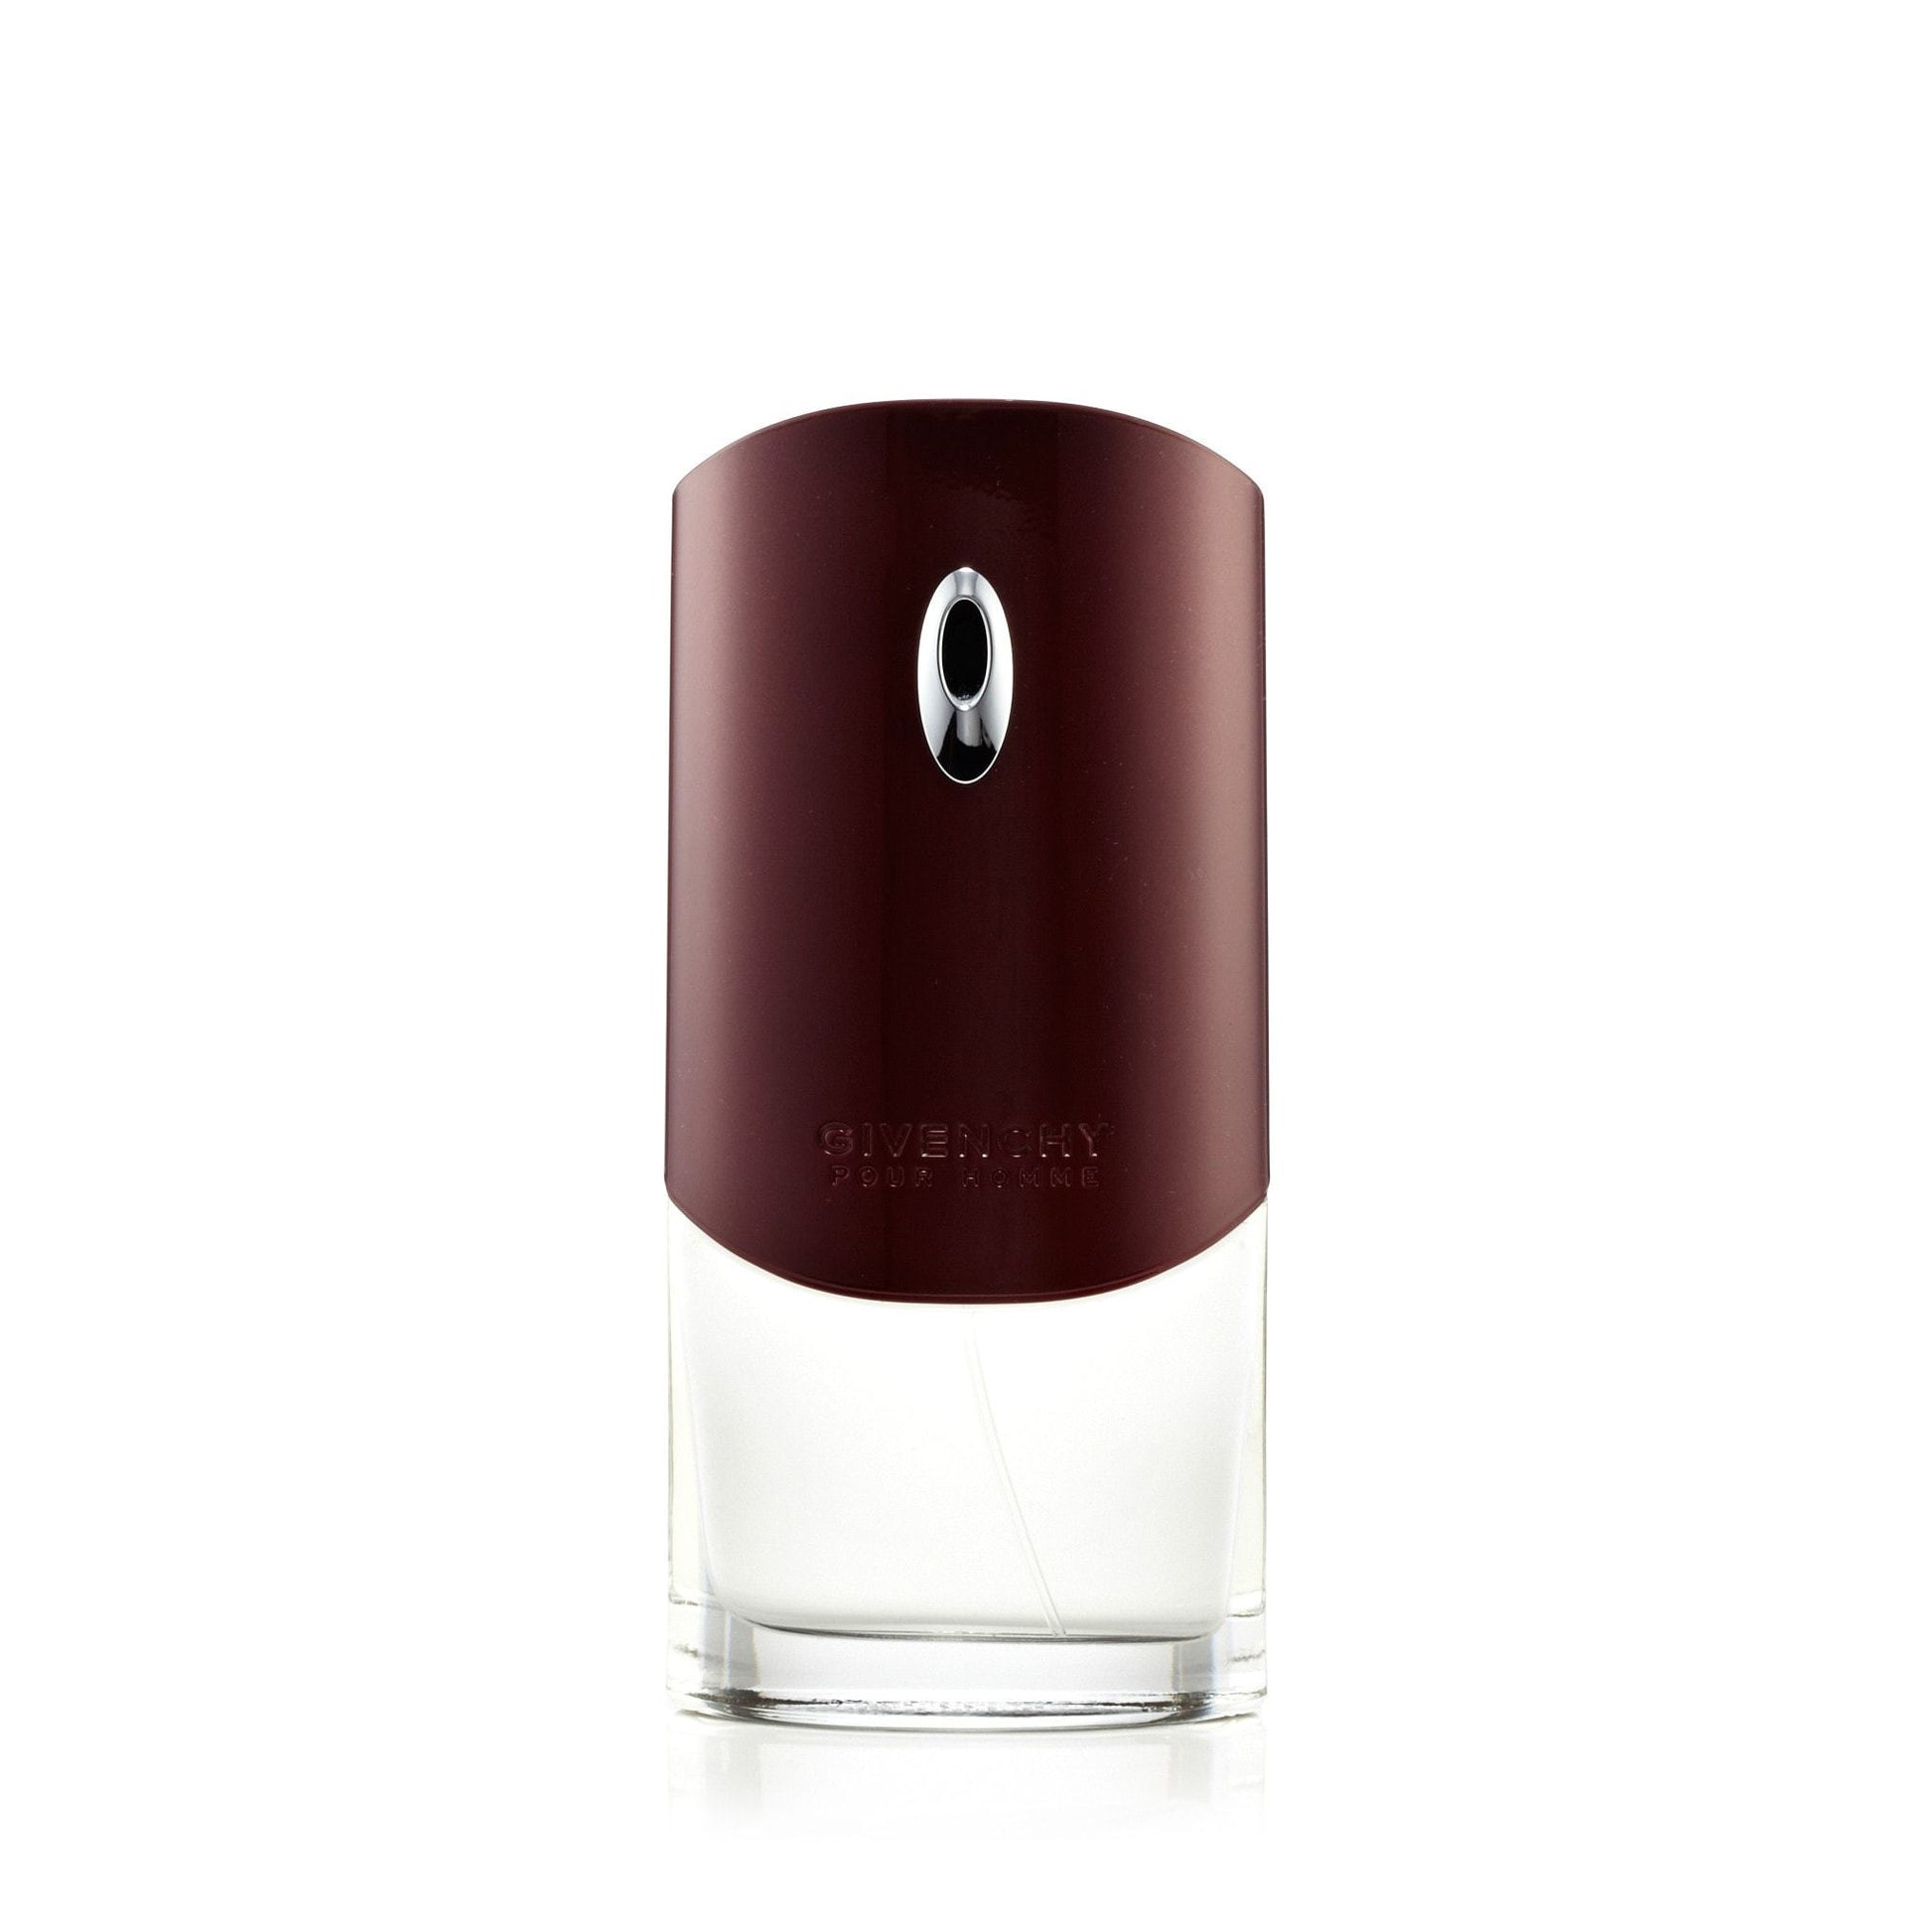 Pour Homme Eau de Toilette Spray for Men by Givenchy, Product image 1